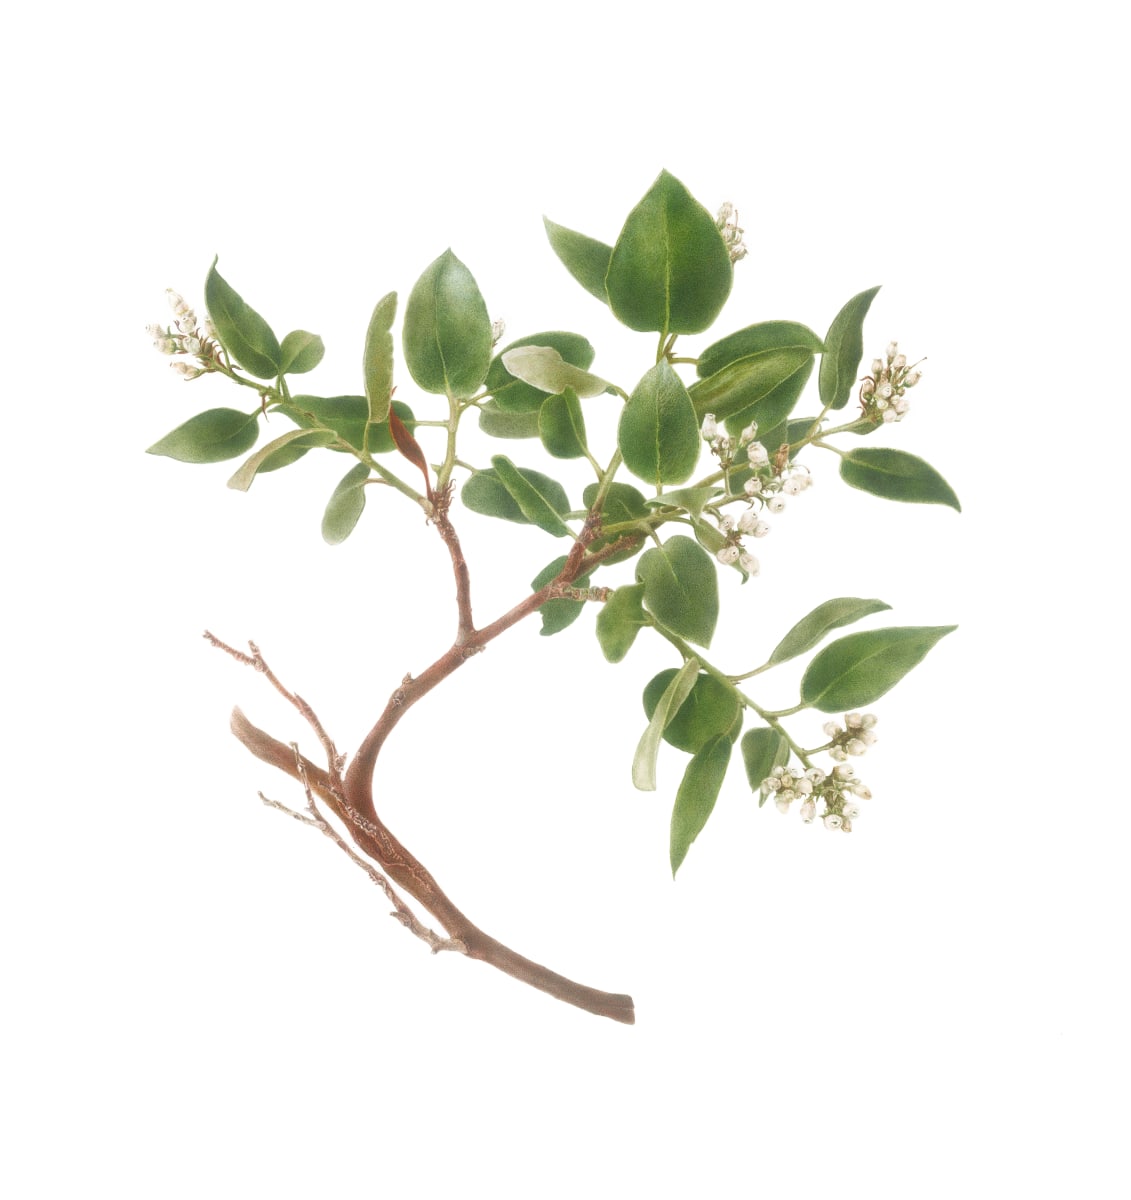 Arctostaphylos manzanita ssp. laevigata (Contra Costa Manzanita) by Deb Shaw 